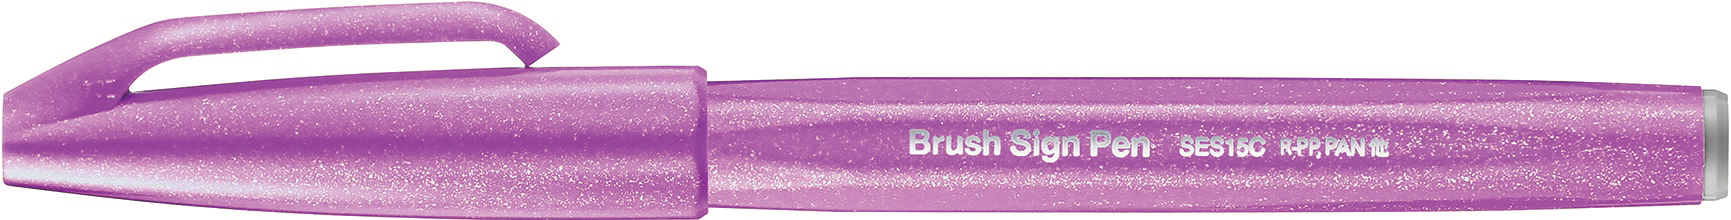 PENTEL Brush Sign Pen SES15C-P2 pivoine